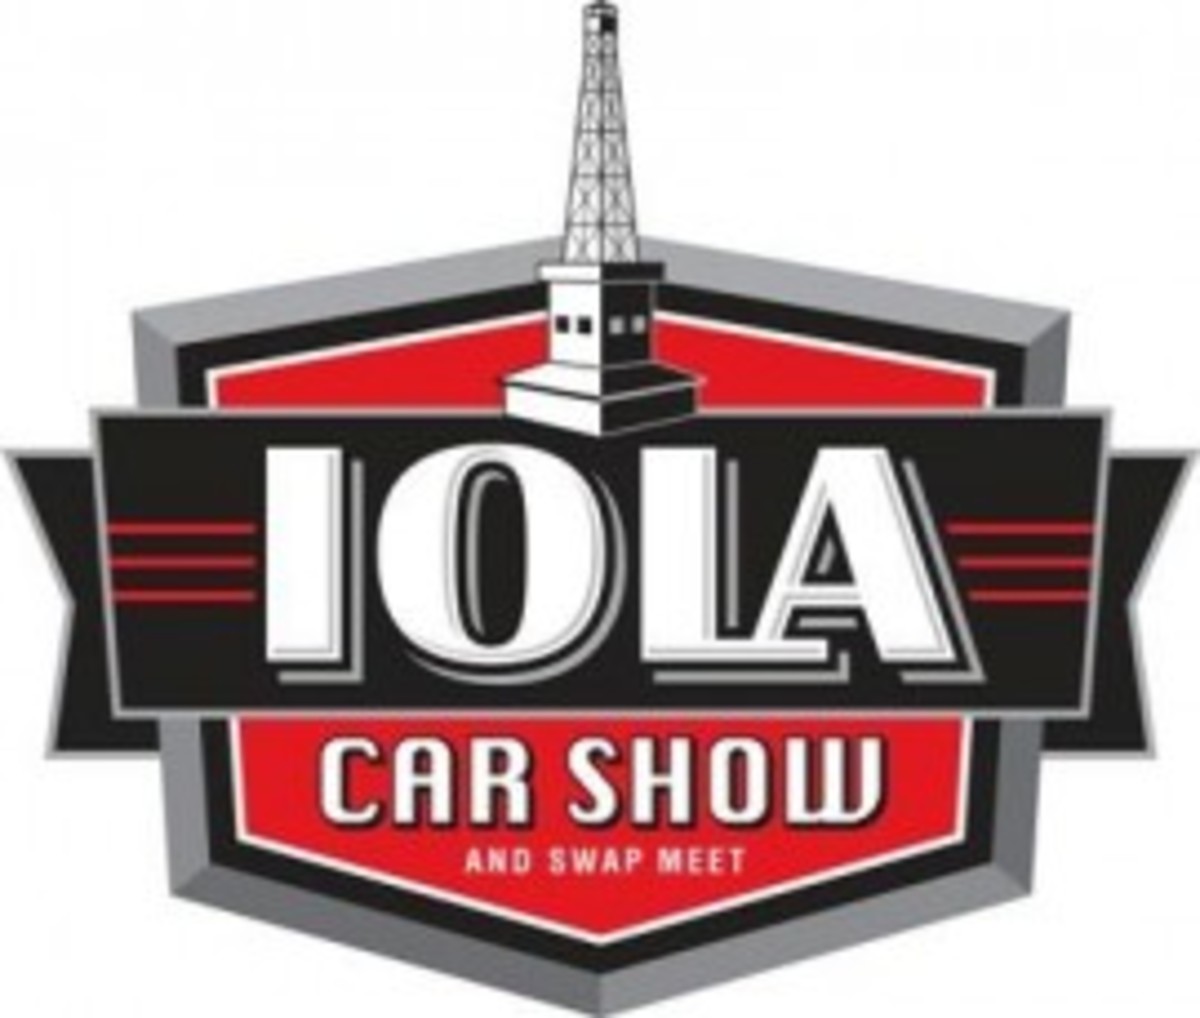 IolaCar Show logo